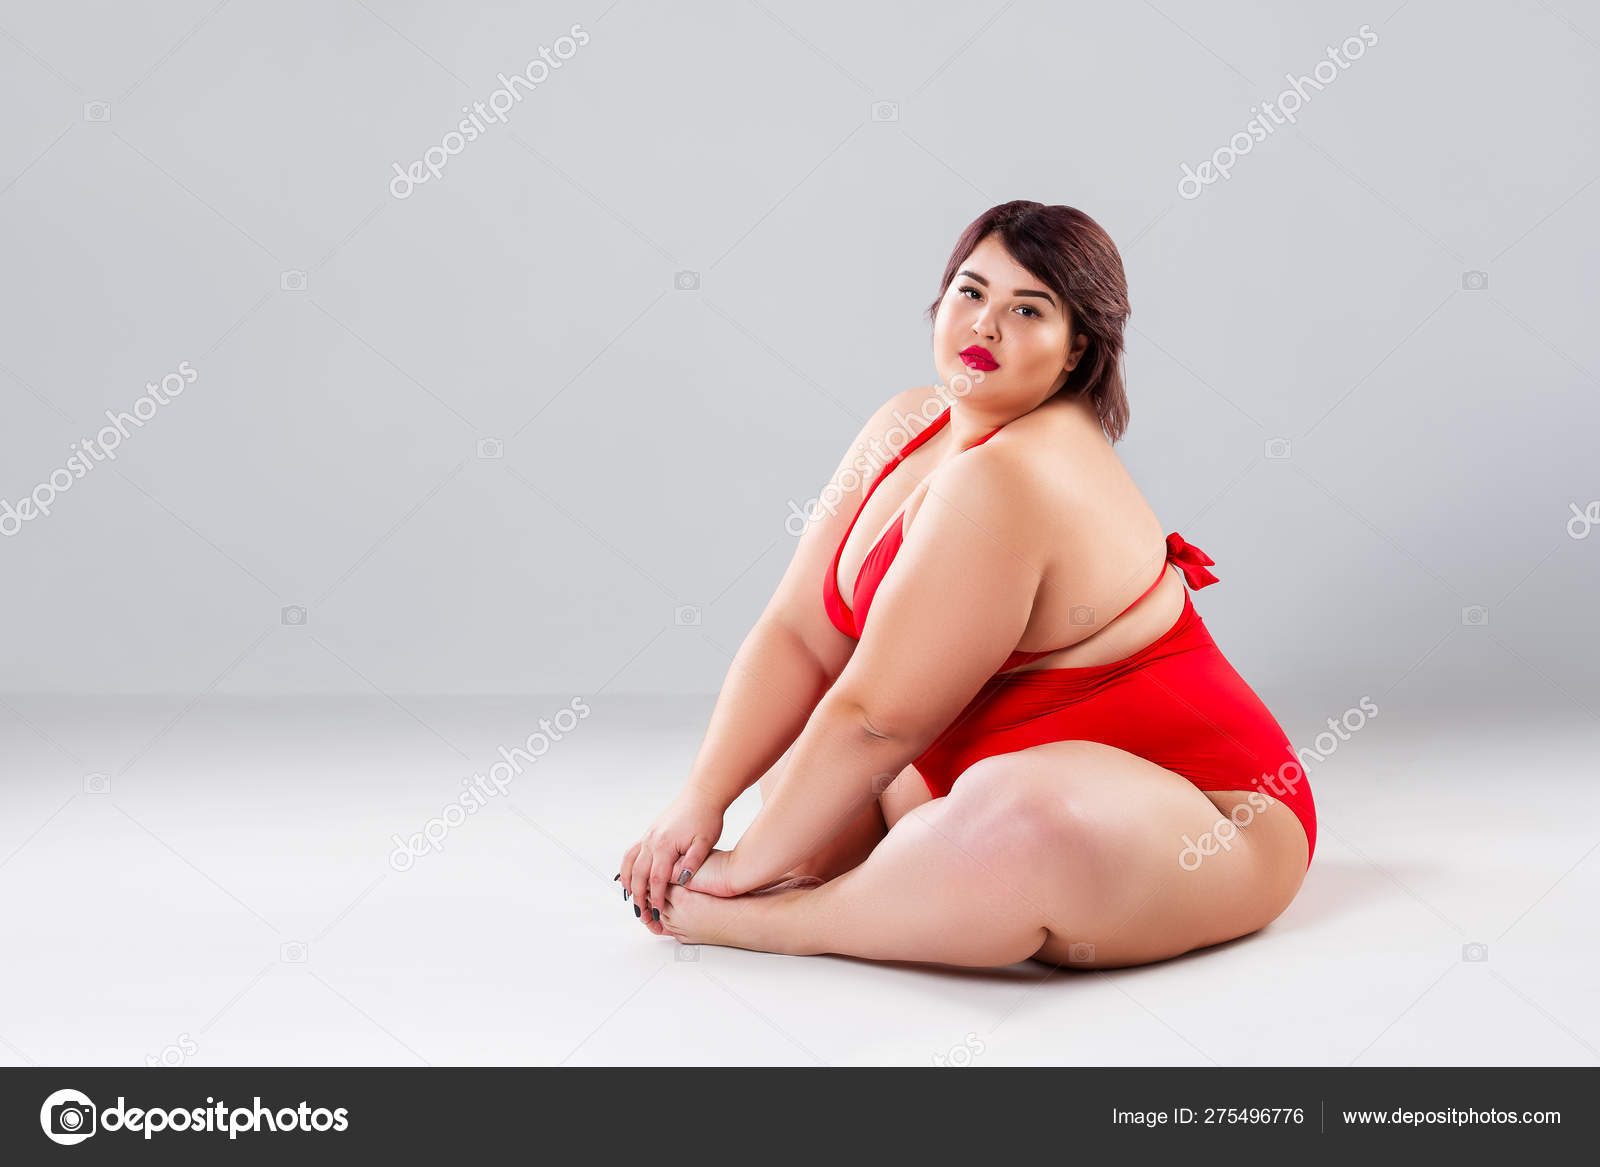 Fat Heavy Model